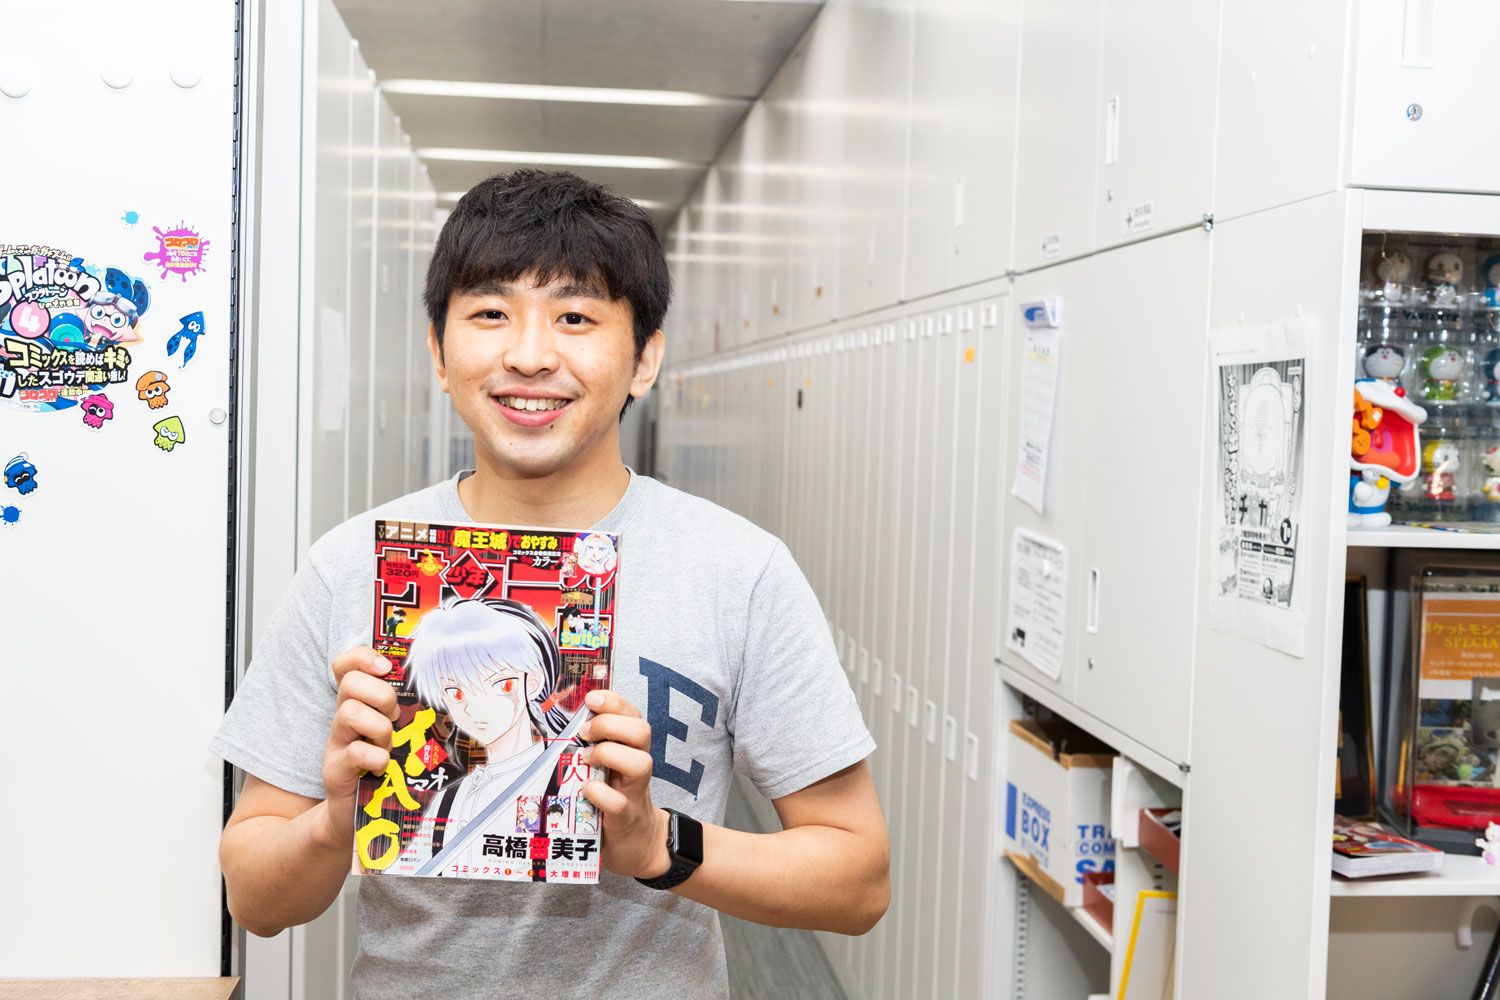 『MAO』が表紙を飾った『週刊少年サンデー』を持つ森脇健人さん